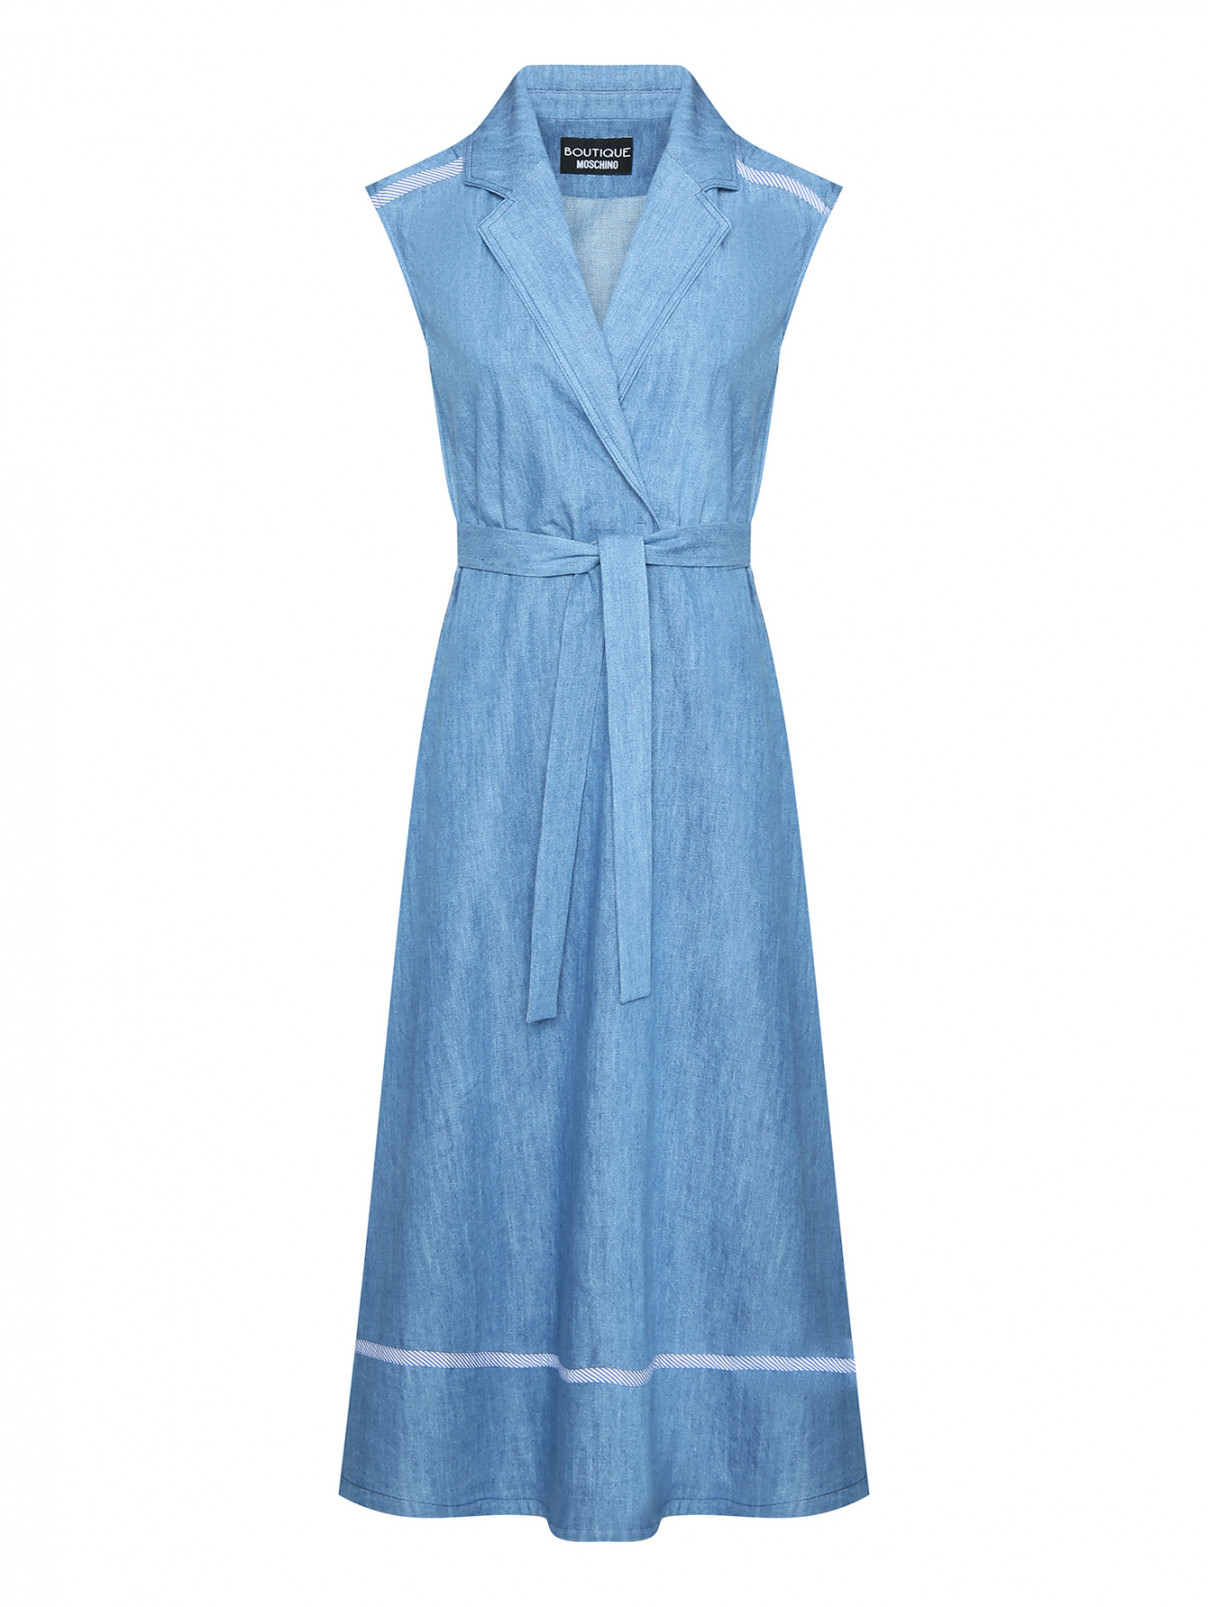 Платье из денима без рукавов Moschino Boutique  –  Общий вид  – Цвет:  Синий